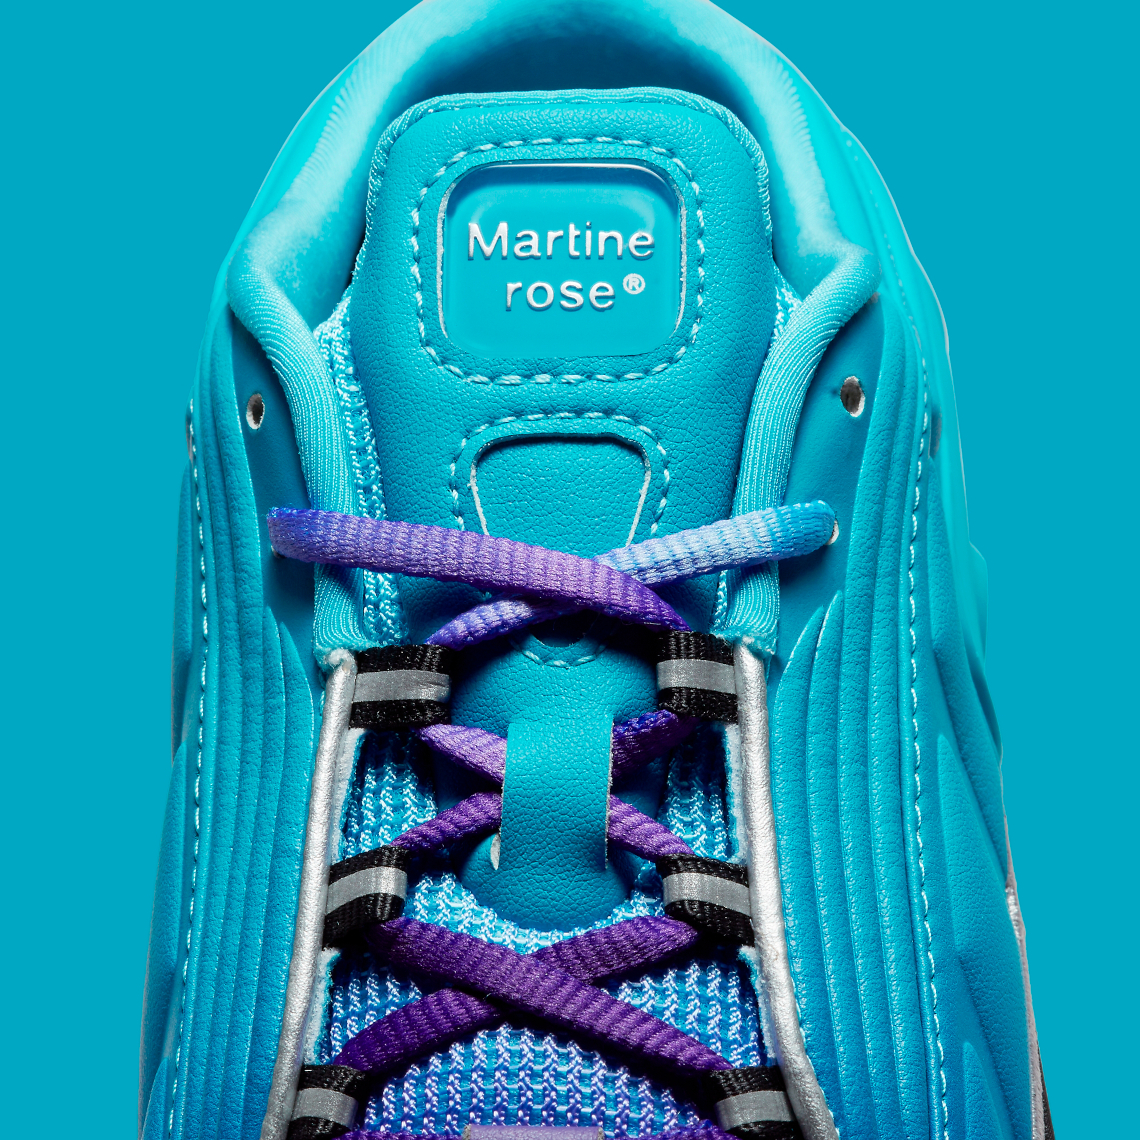 Martine Rose Nike Shox Mule Mr 4 Scuba Blue Dq2401 400 7